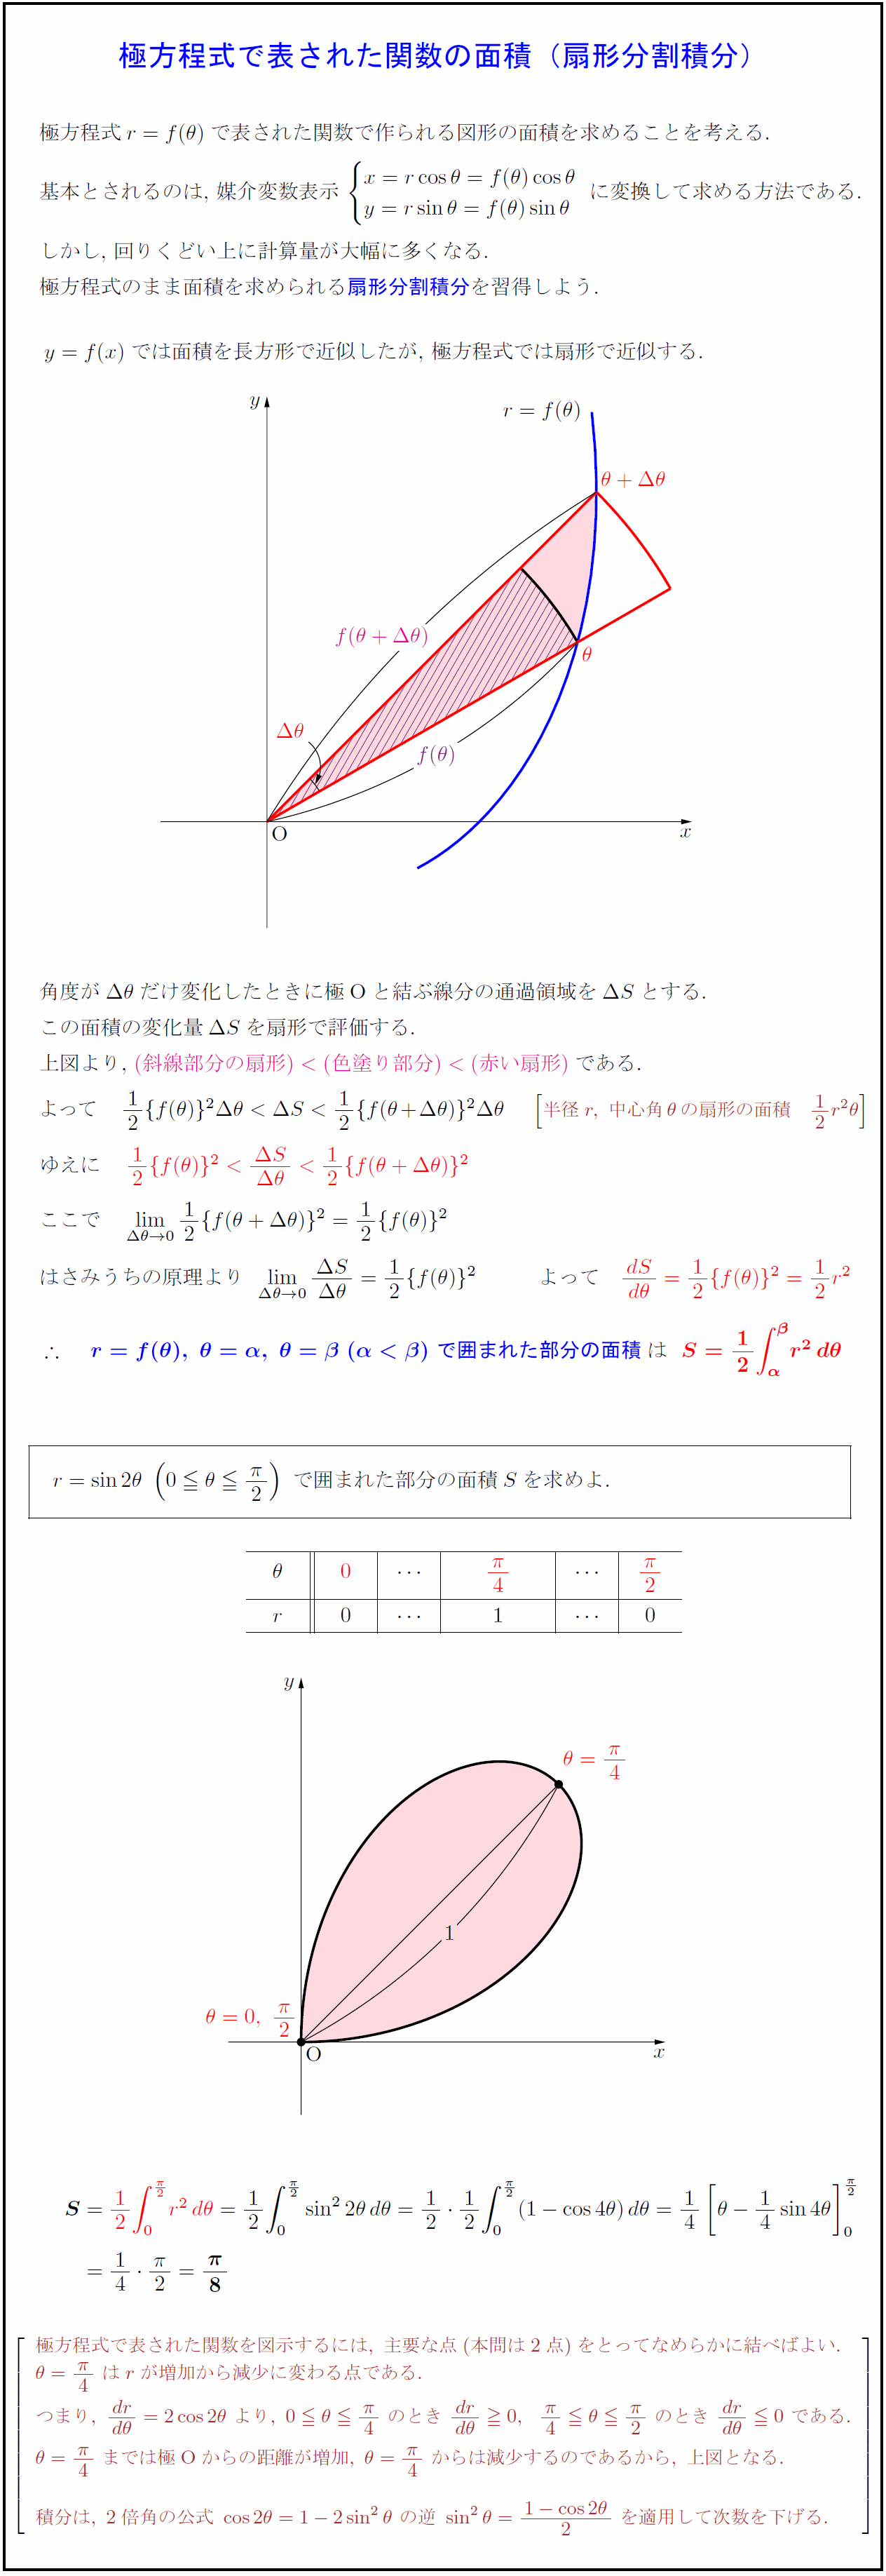 高校数学 極方程式で表された関数の面積 扇形分割積分 正葉曲線r Sin28 受験の月